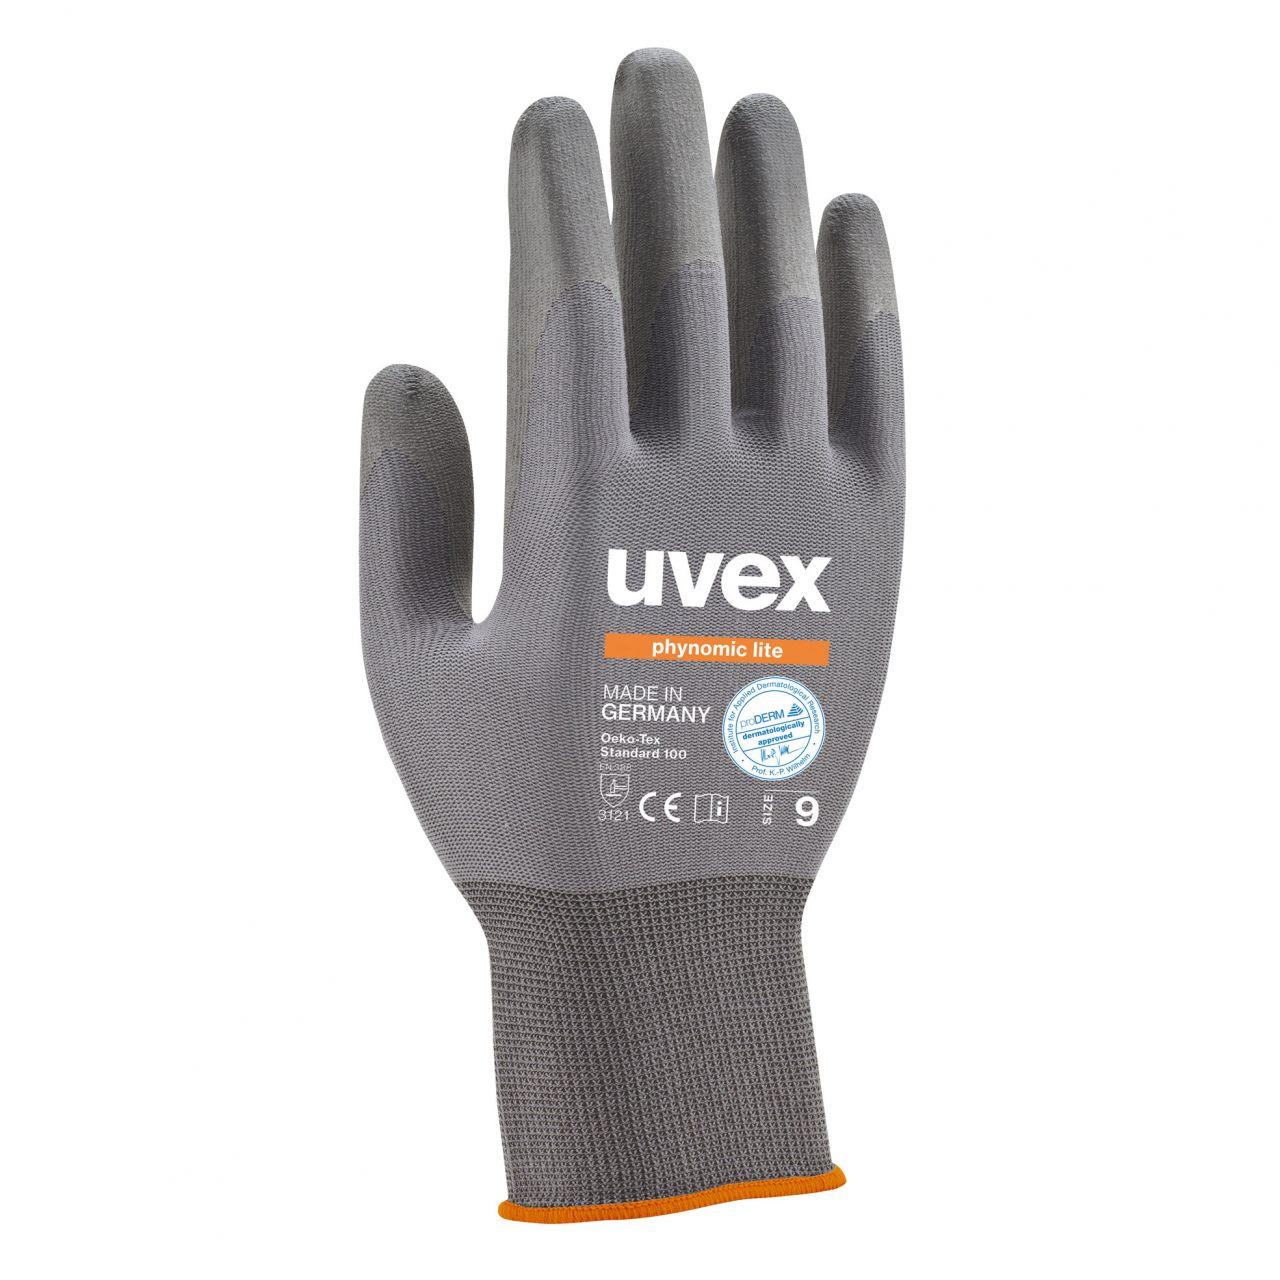 Защитные перчатки uvex финомик лайт